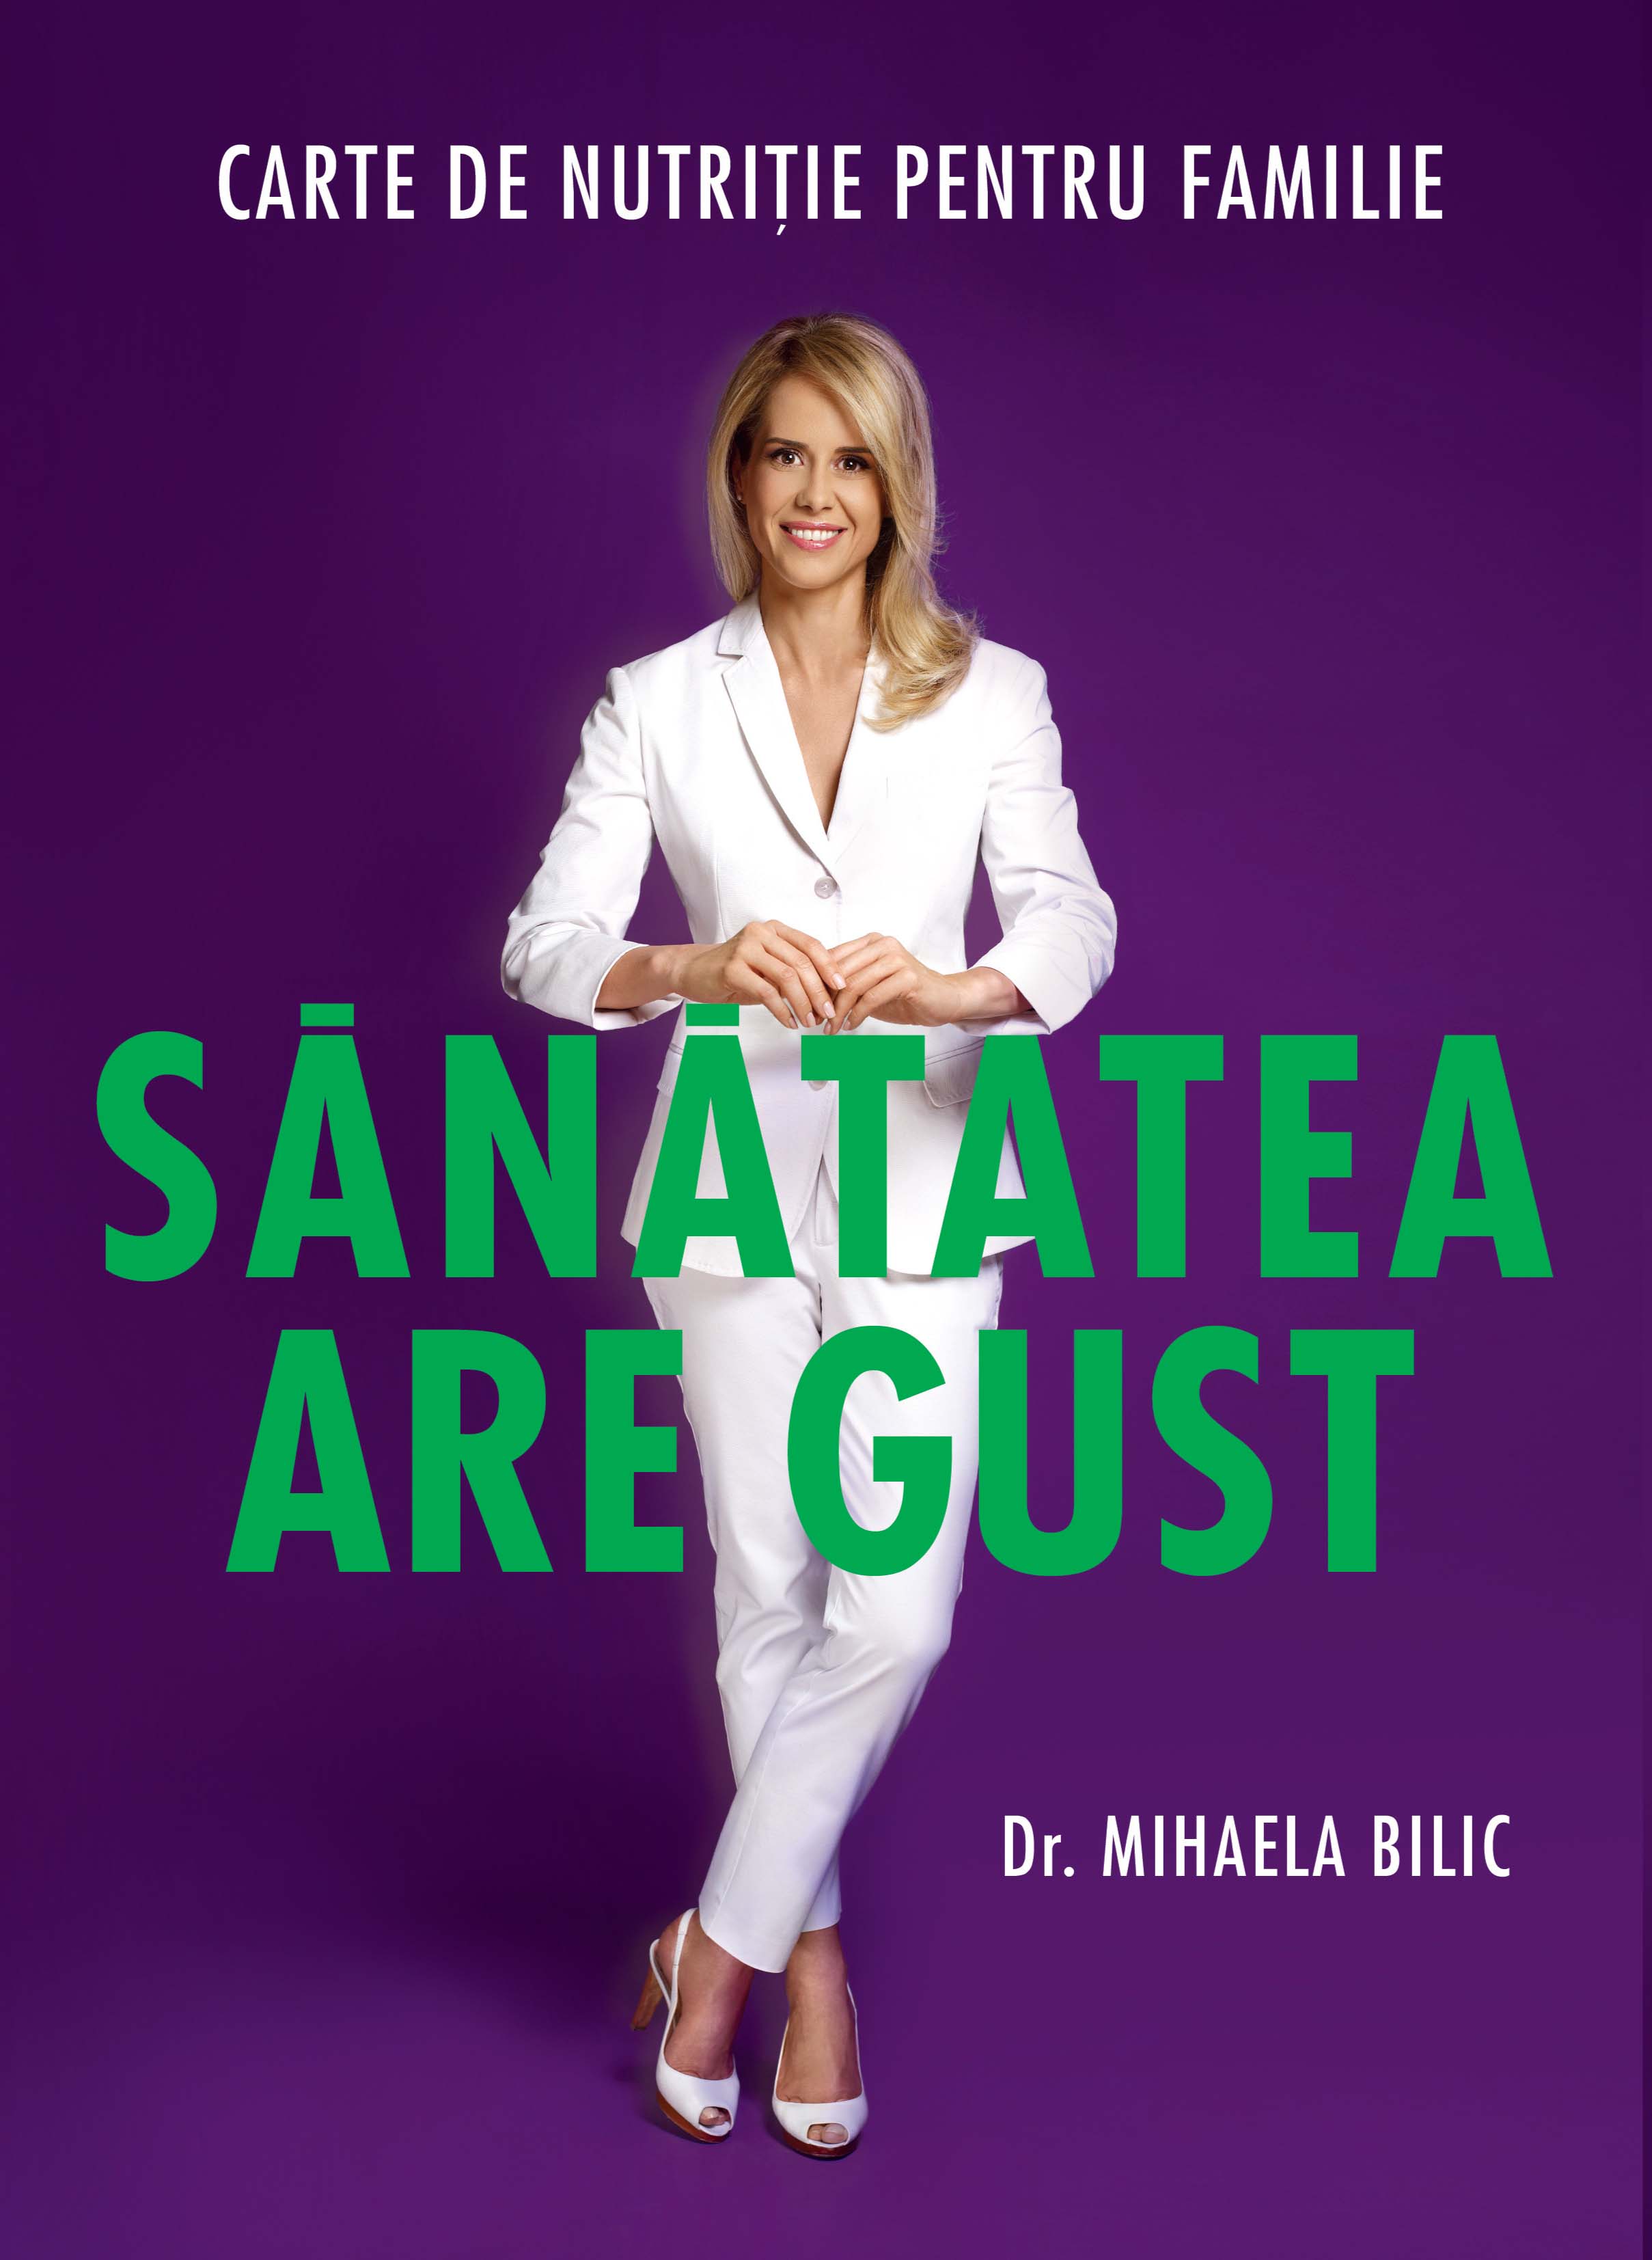 Sanatatea are gust - ed 2 - Dr. Mihaela Bilic